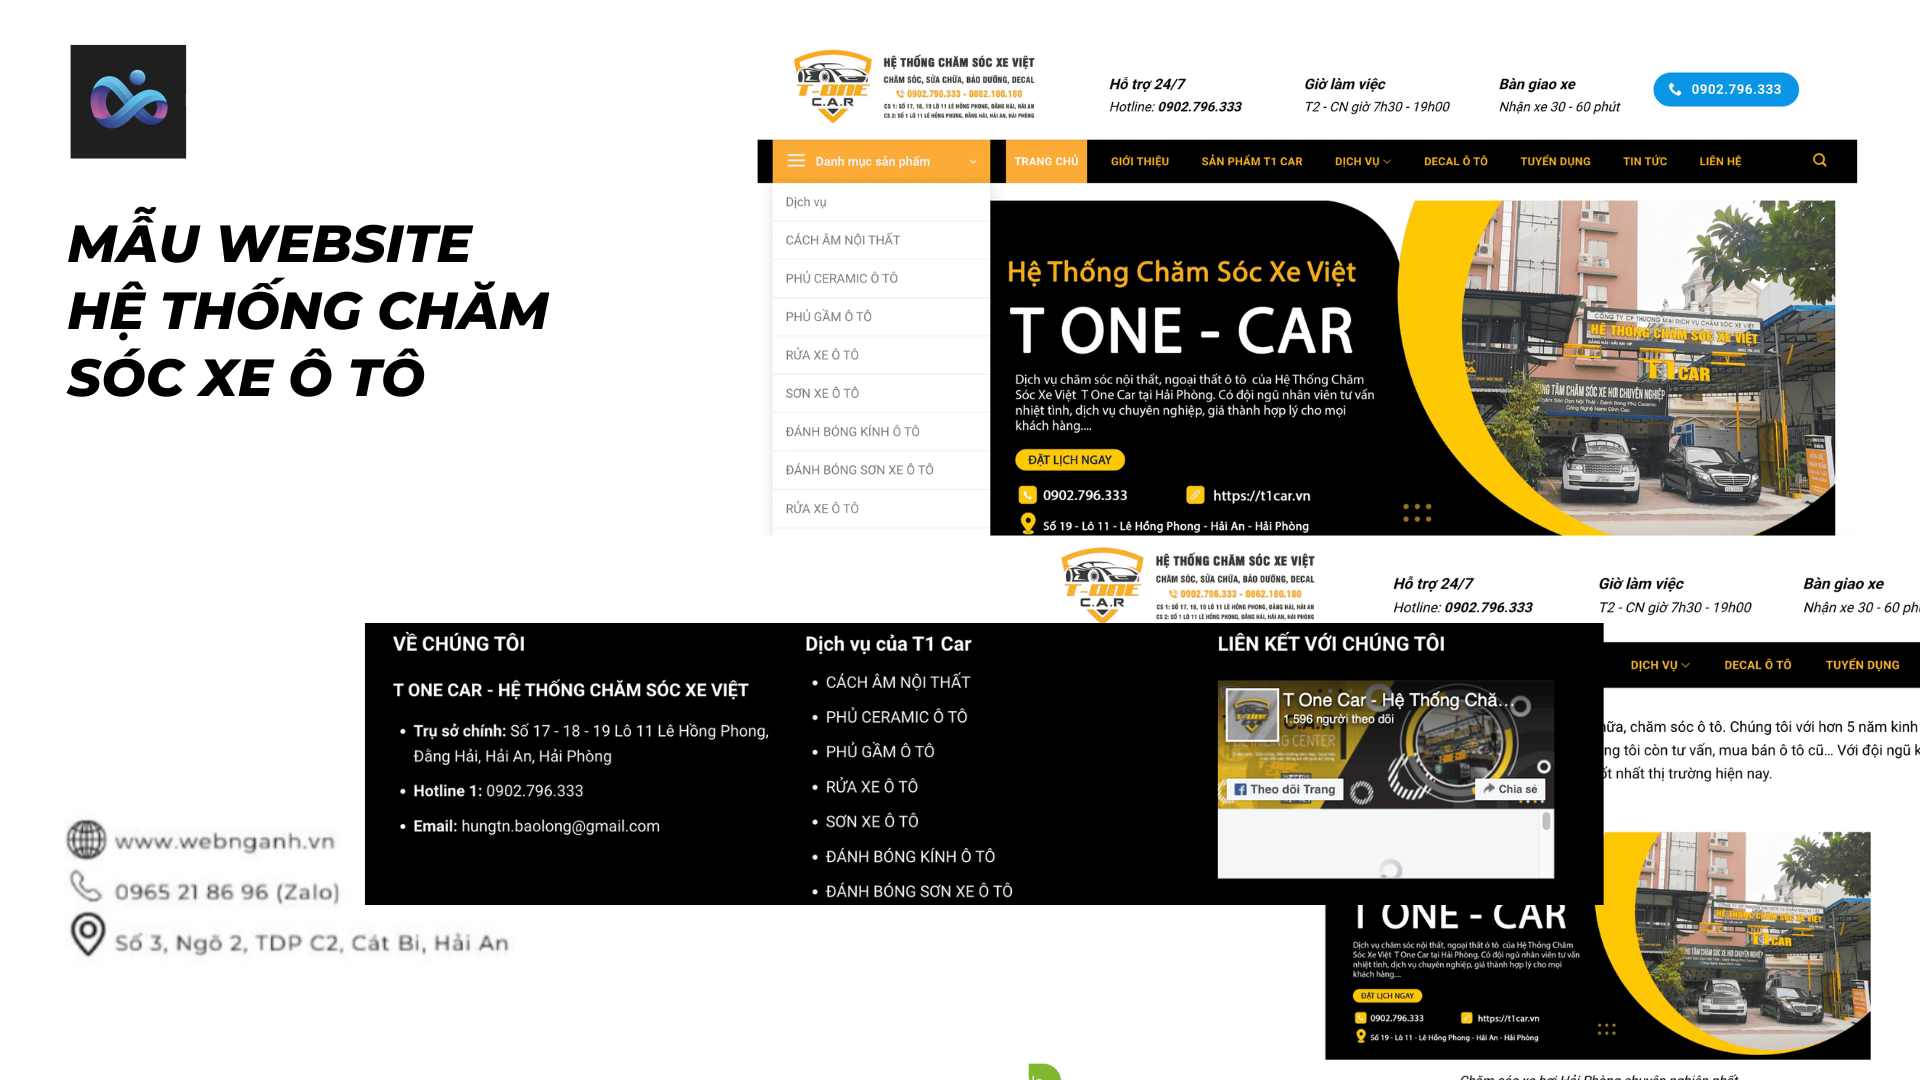 Mẫu Website hệ thống chăm sóc xe ô tô 